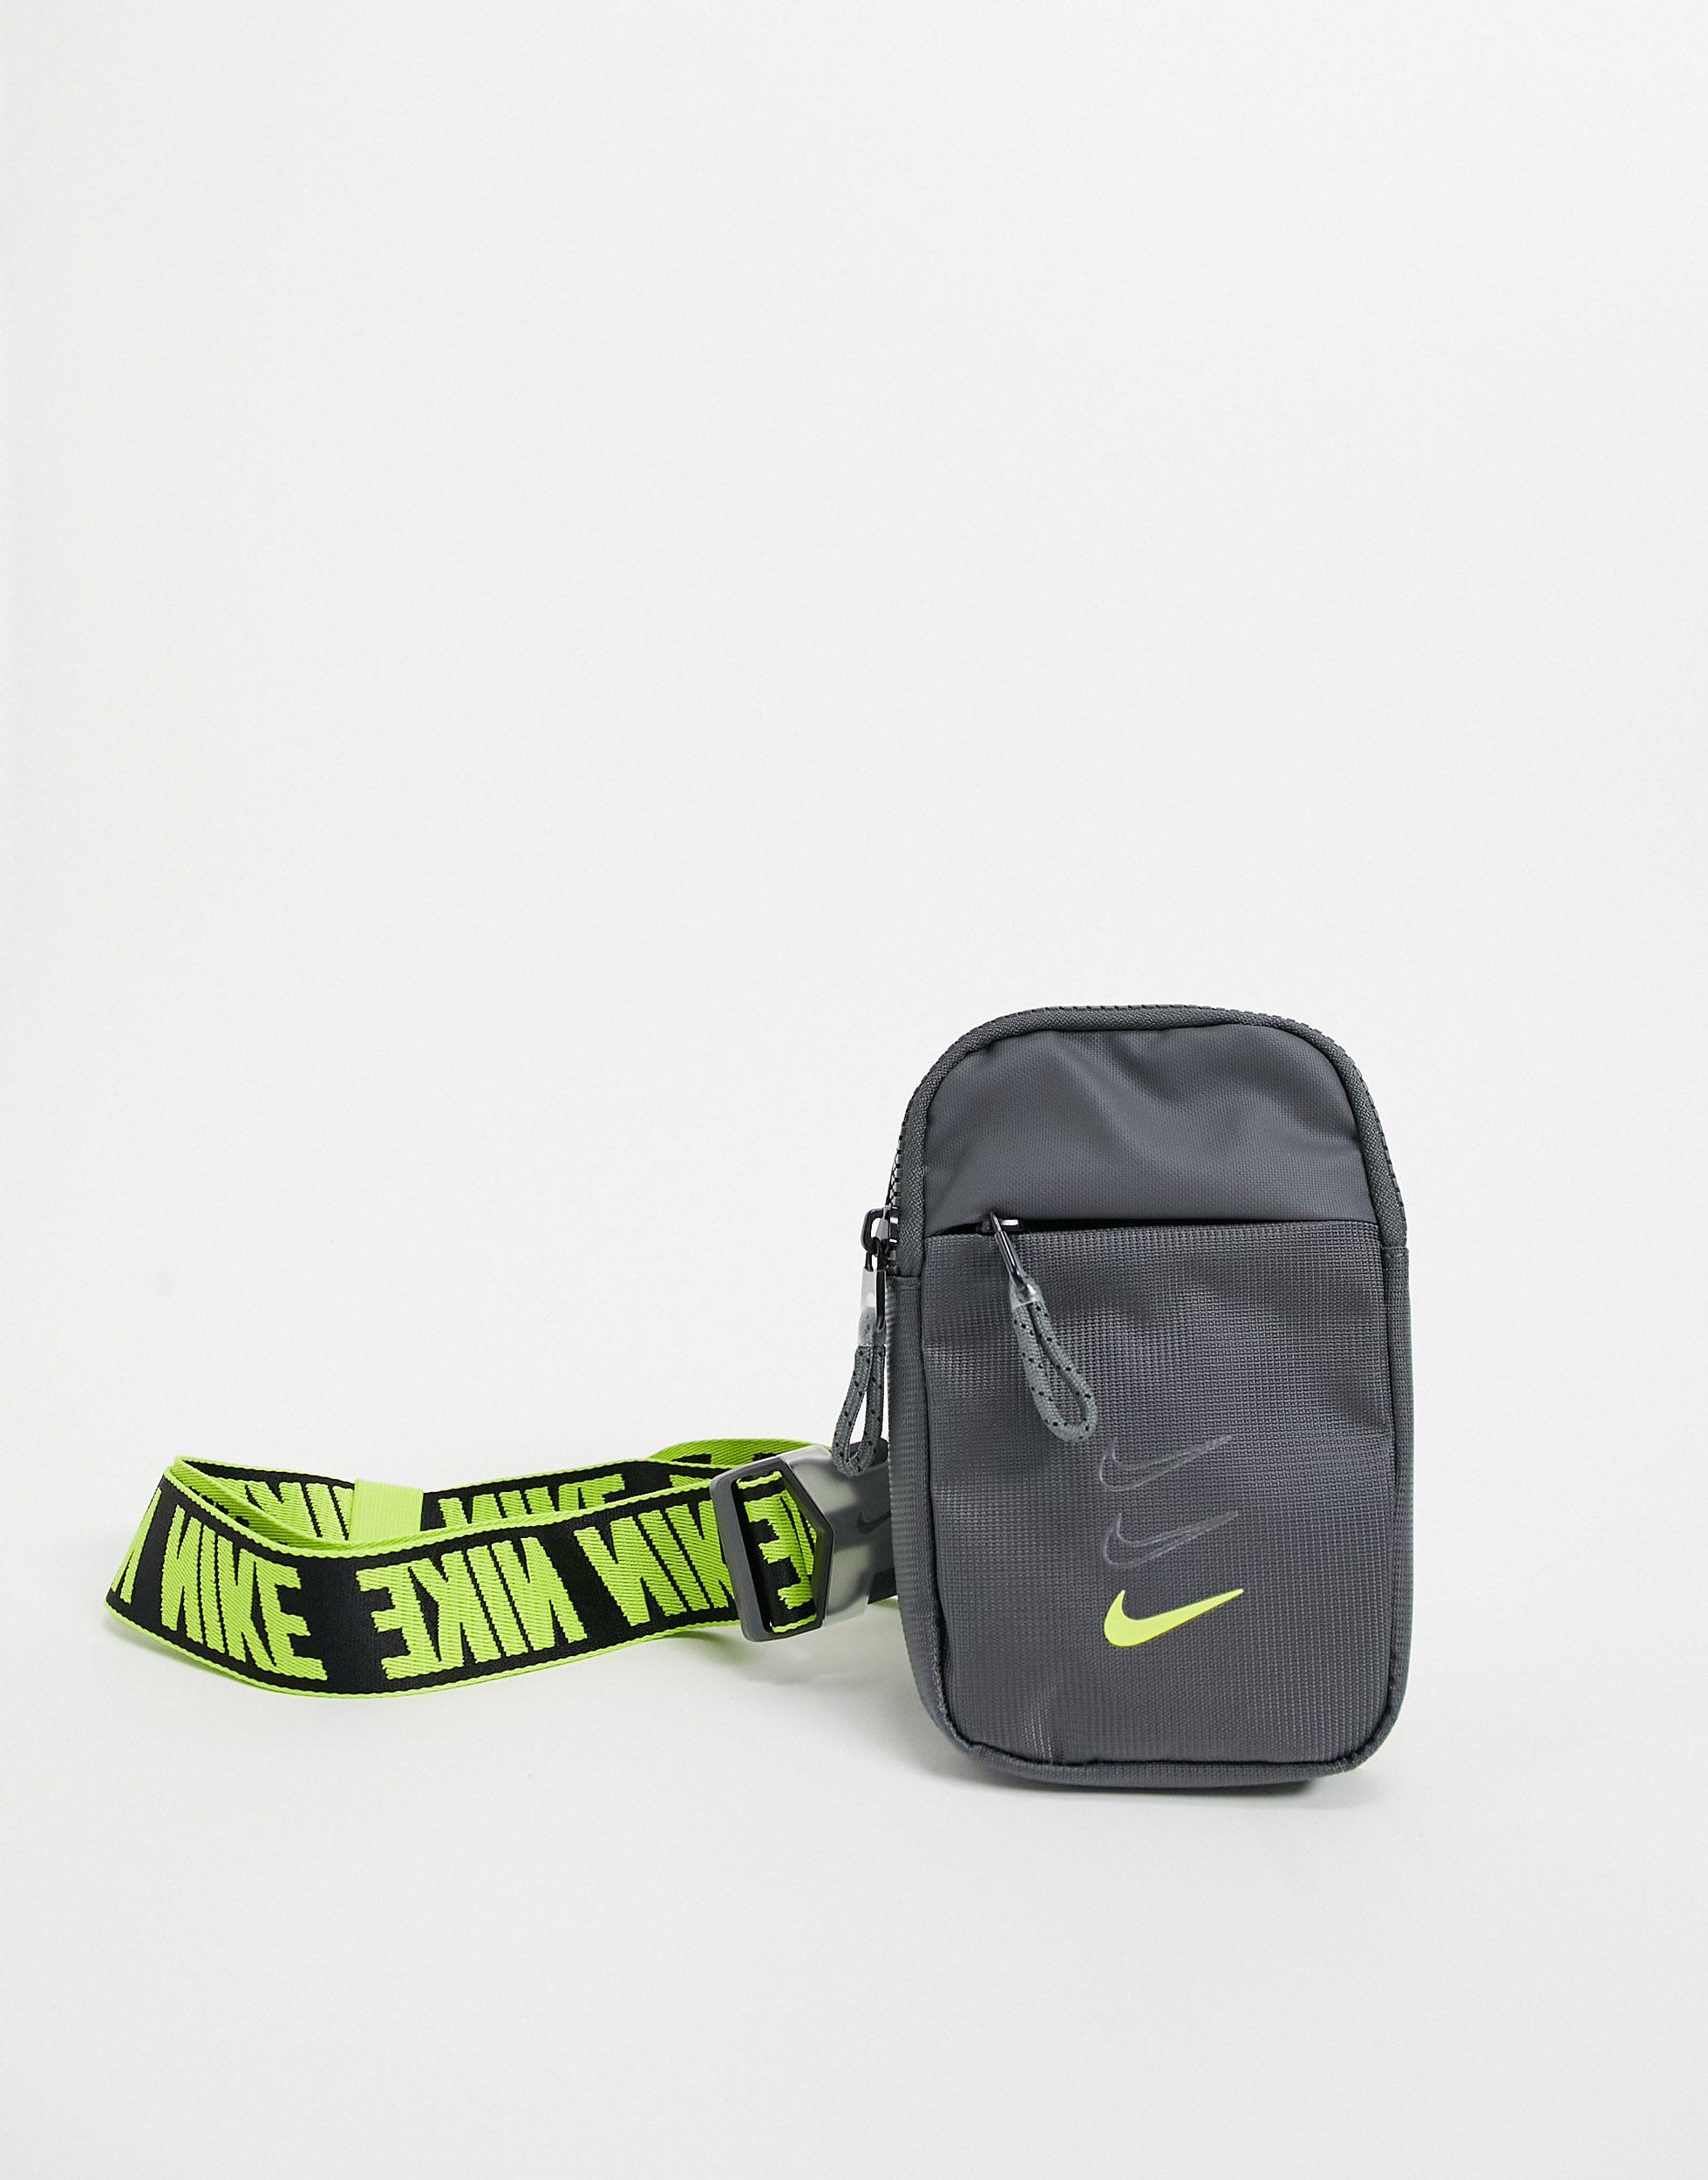 Nike cross bag